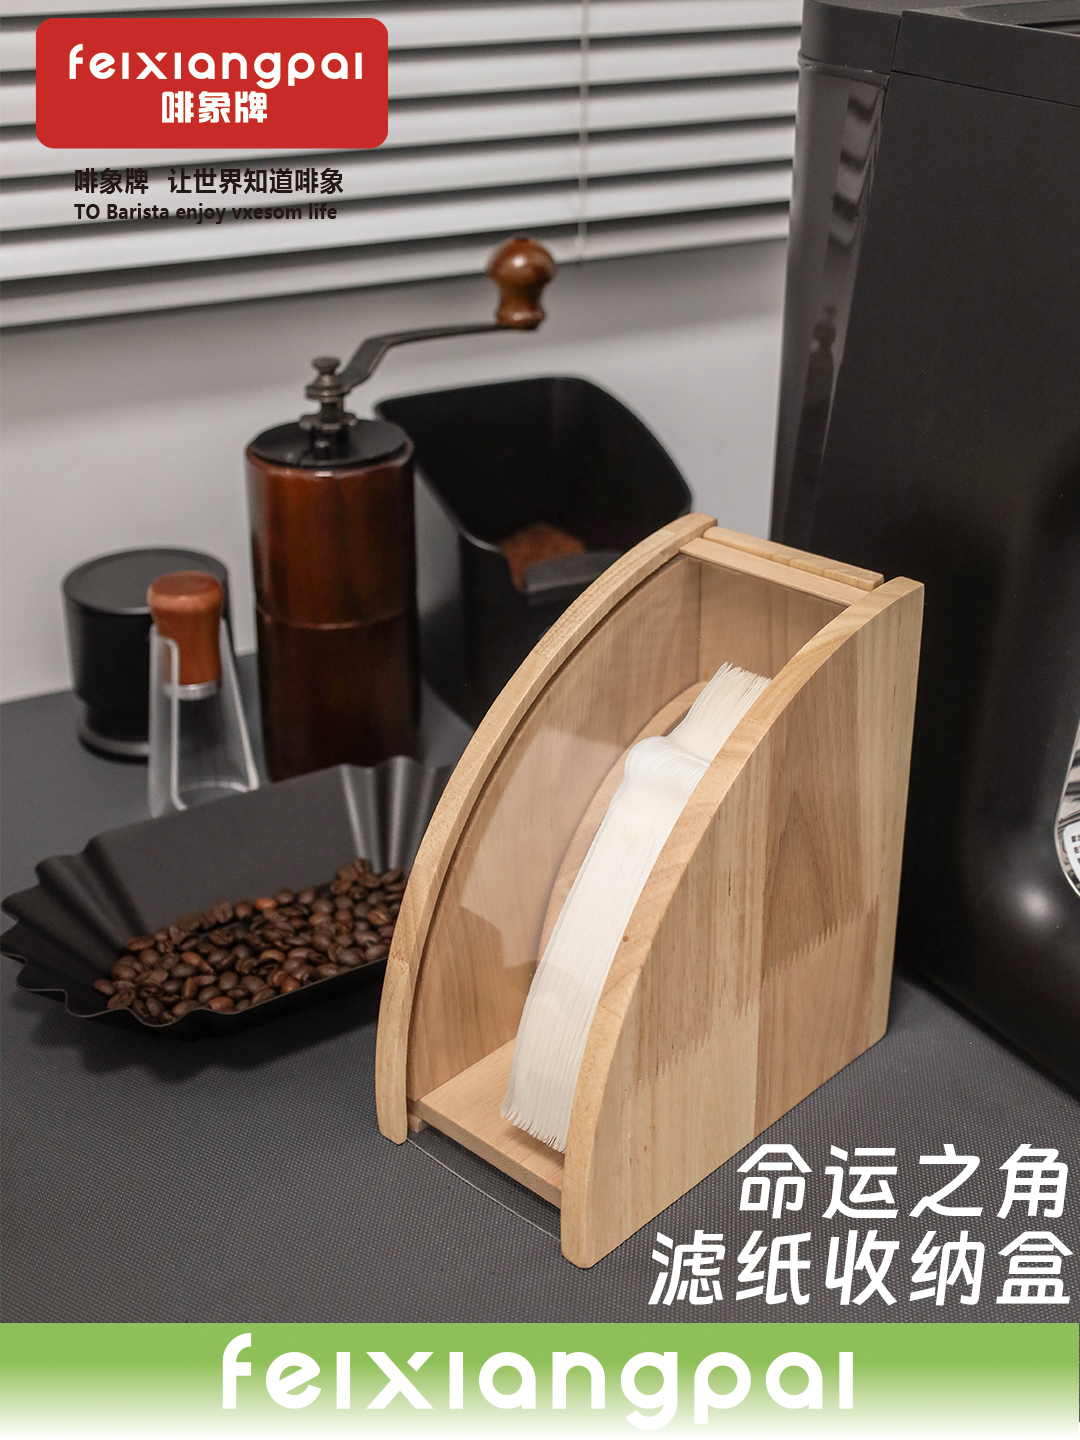 橡木手沖咖啡濾紙收納架收納盒小清新風格為您提供一個整潔的咖啡沖泡空間